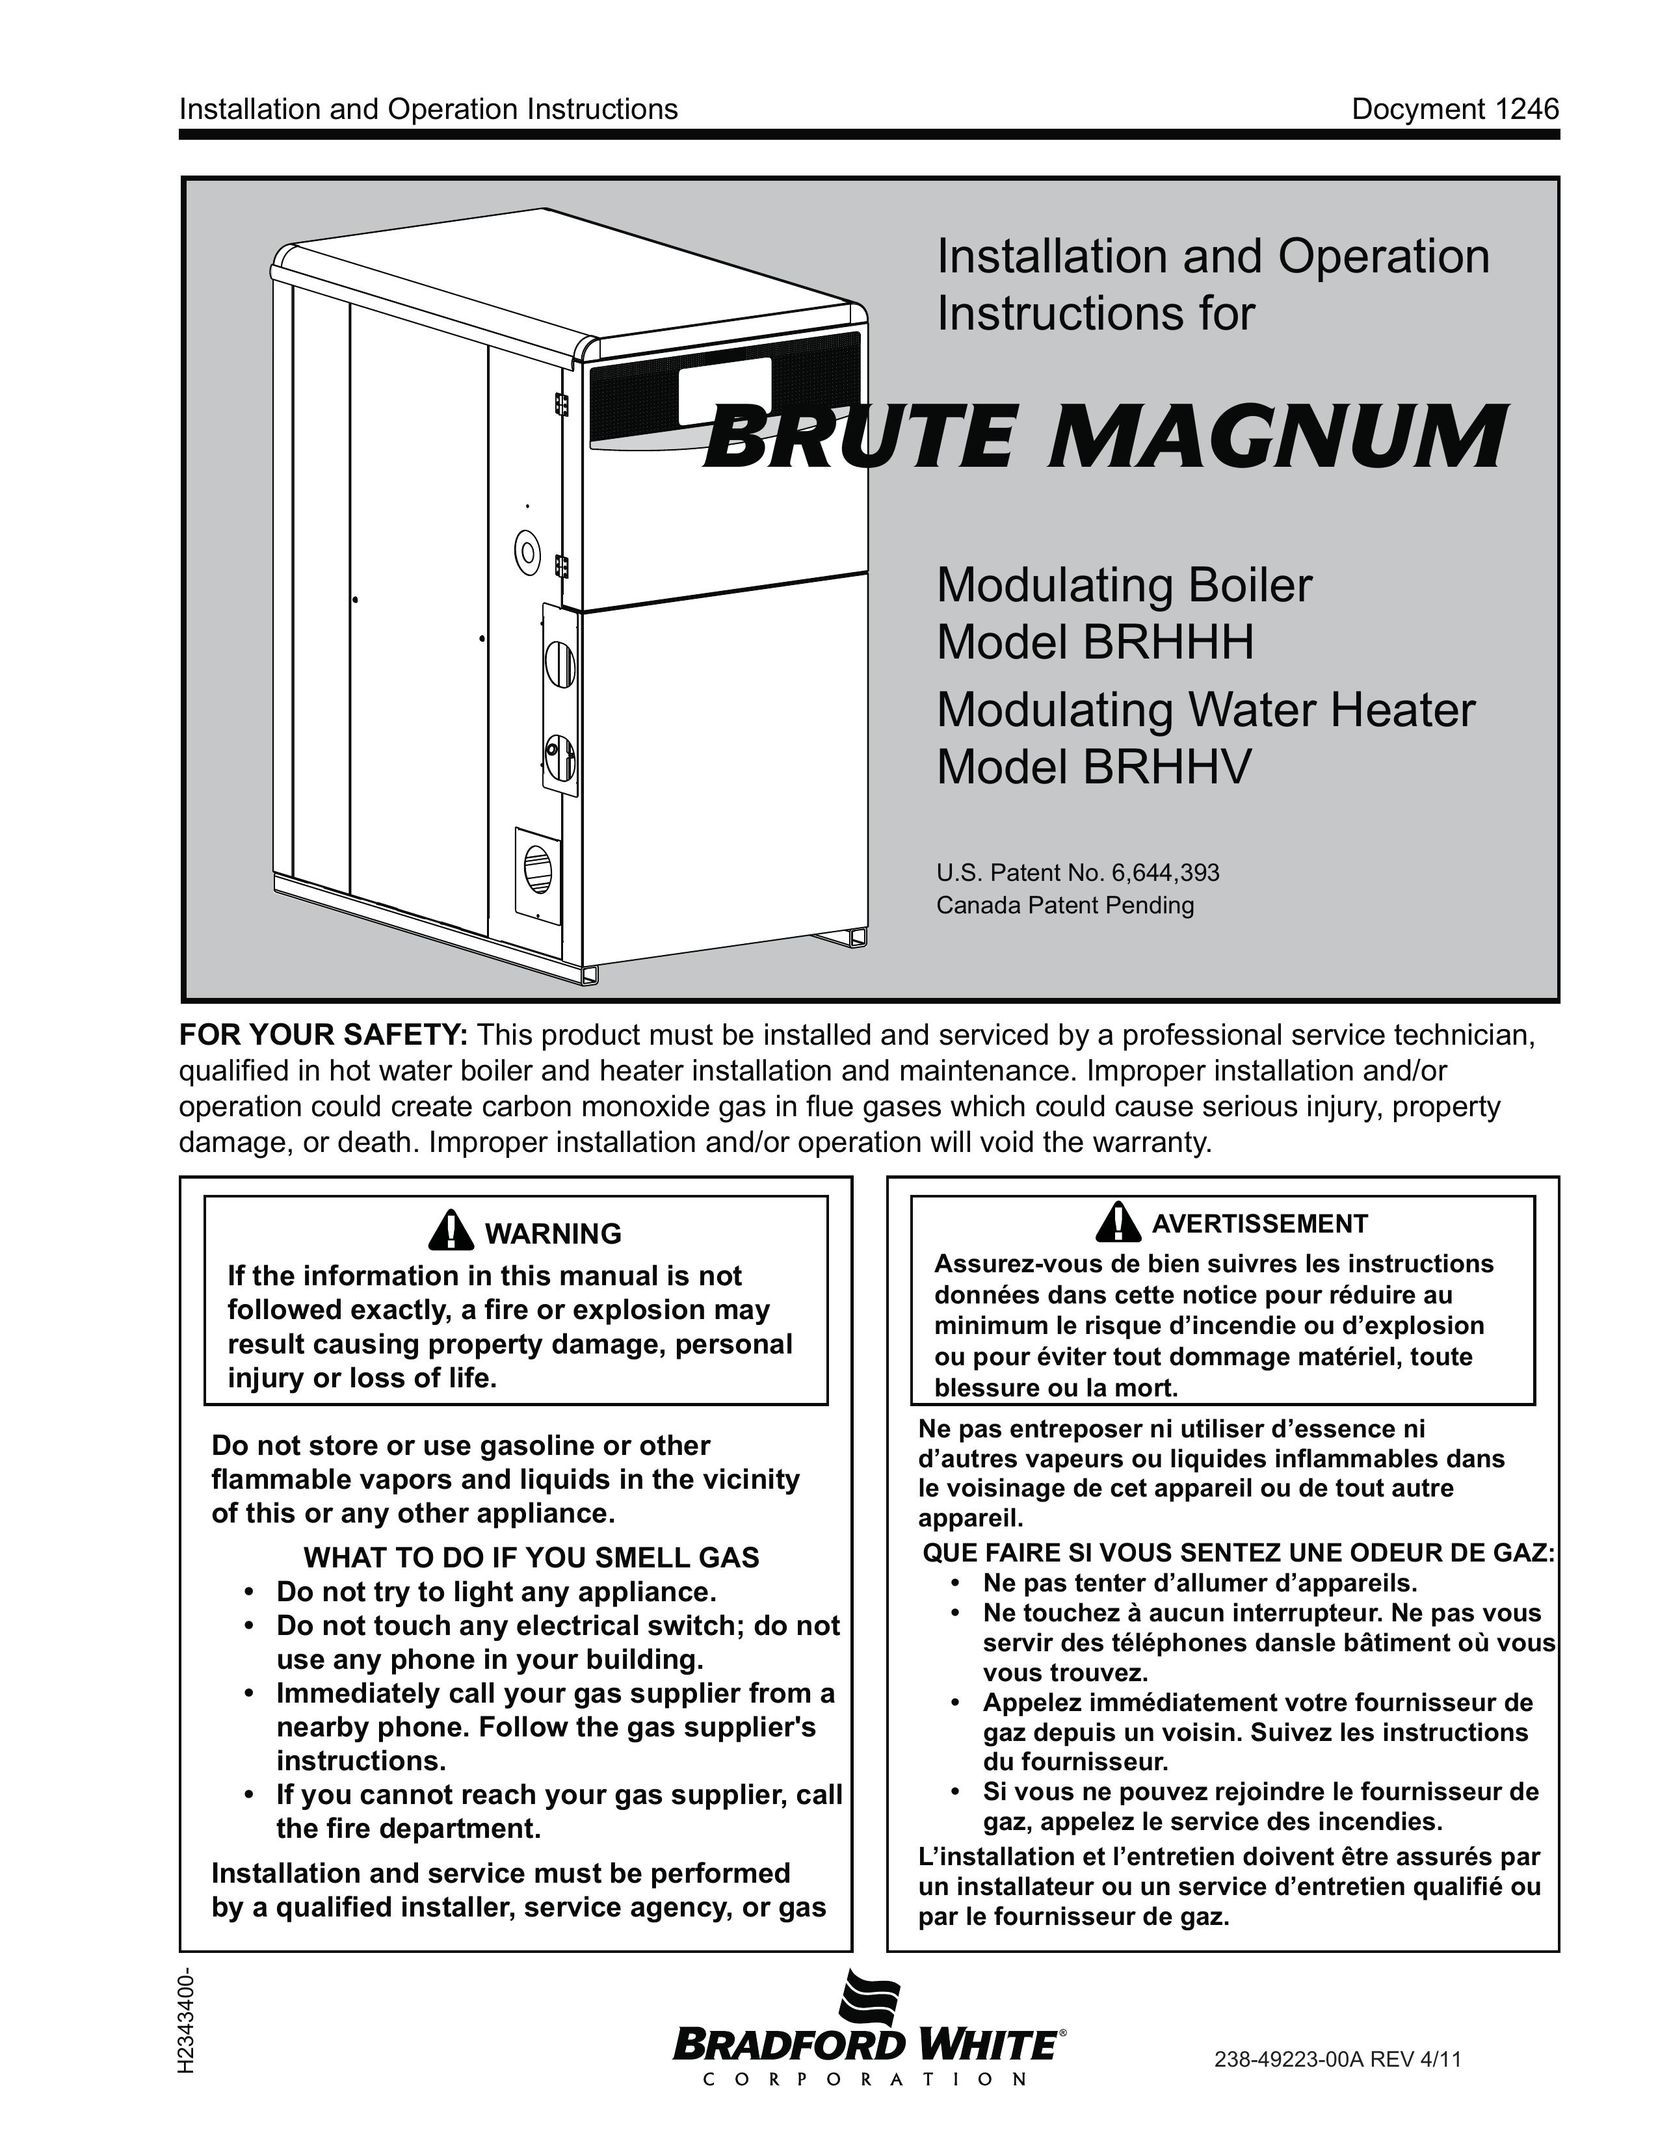 Bradford-White Corp BRHHH Boiler User Manual